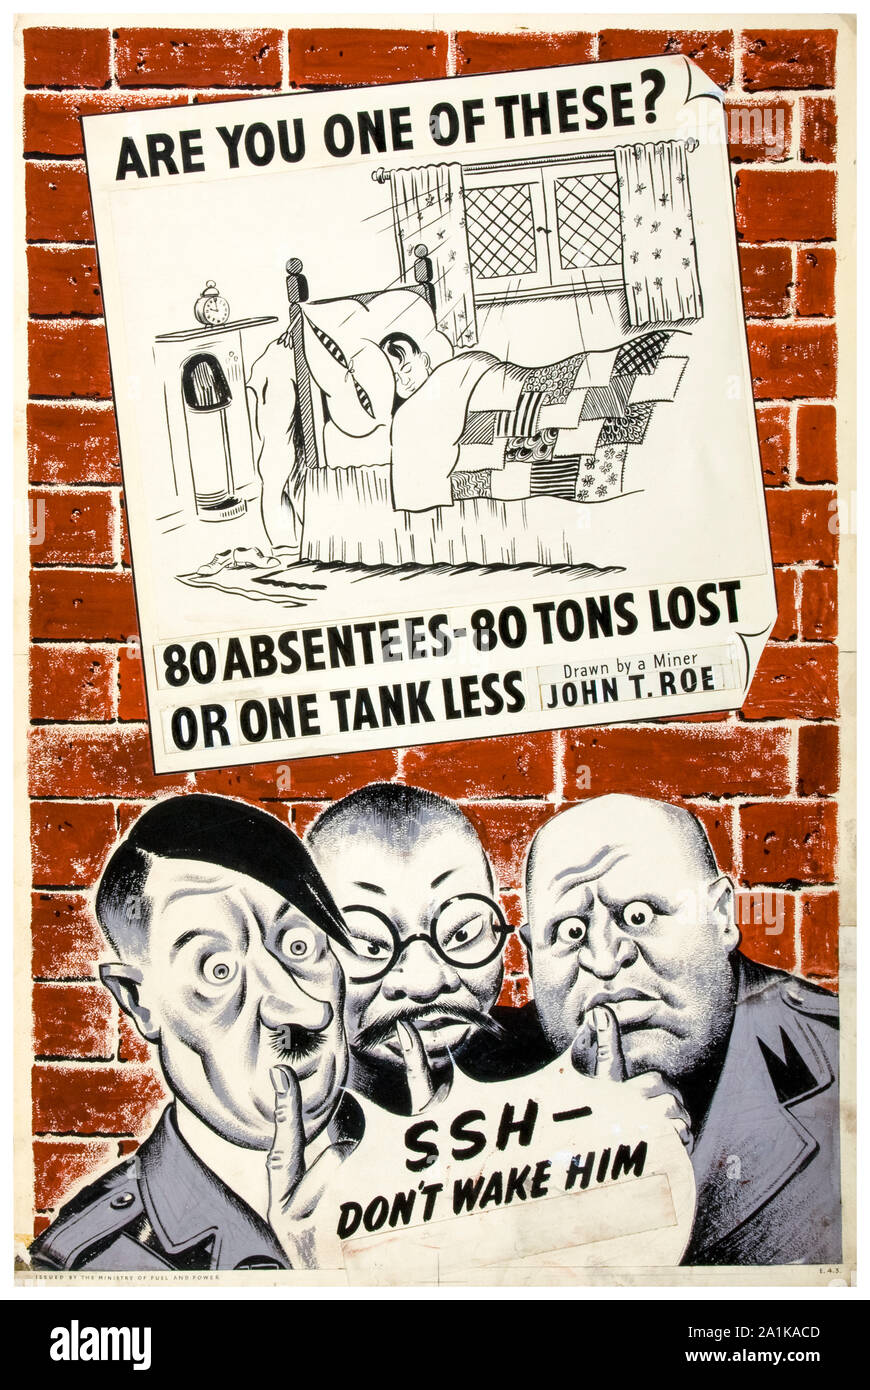 Britische, WW2, Industrie, Fehlzeiten, Mann im Bett, sind Sie einer von diesen?, 80 Abwesenden 80 Tonnen verloren, oder ein Tank weniger, Produktivität, Plakat, 1939-1946 Stockfoto